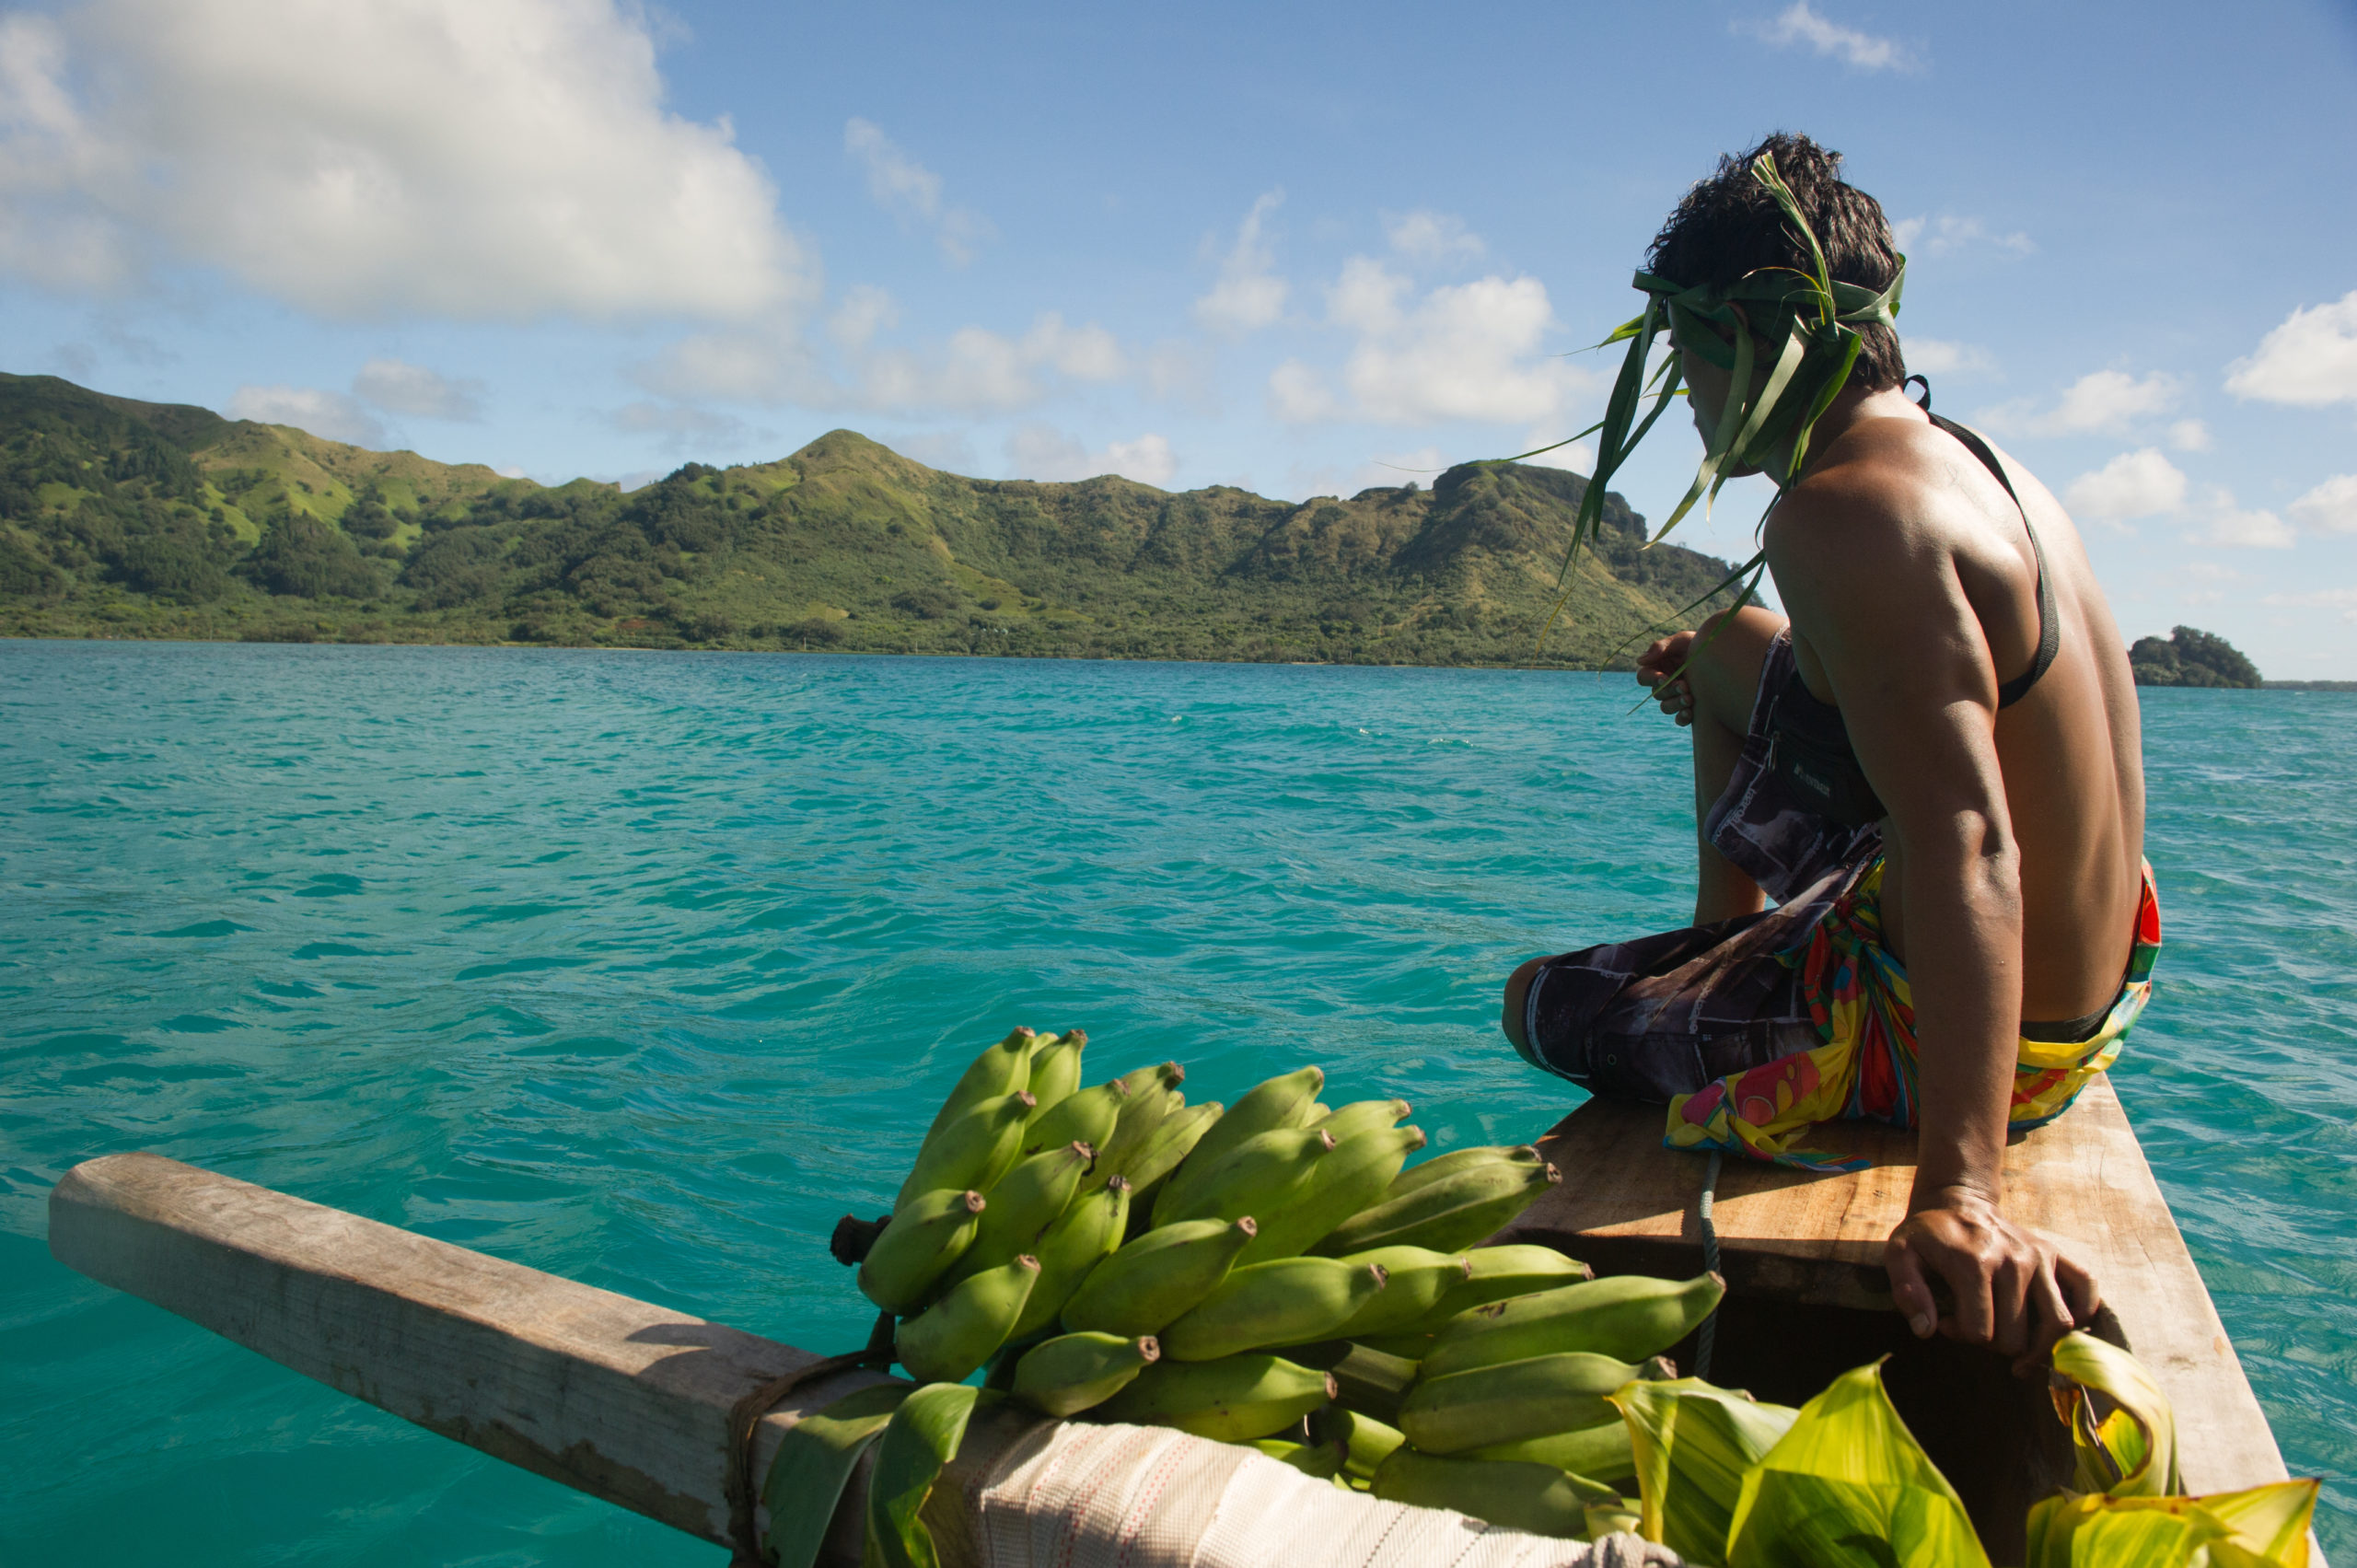 Le rāhui polynésien : un modèle ancestral et efficace pour la gestion des ressources naturelles